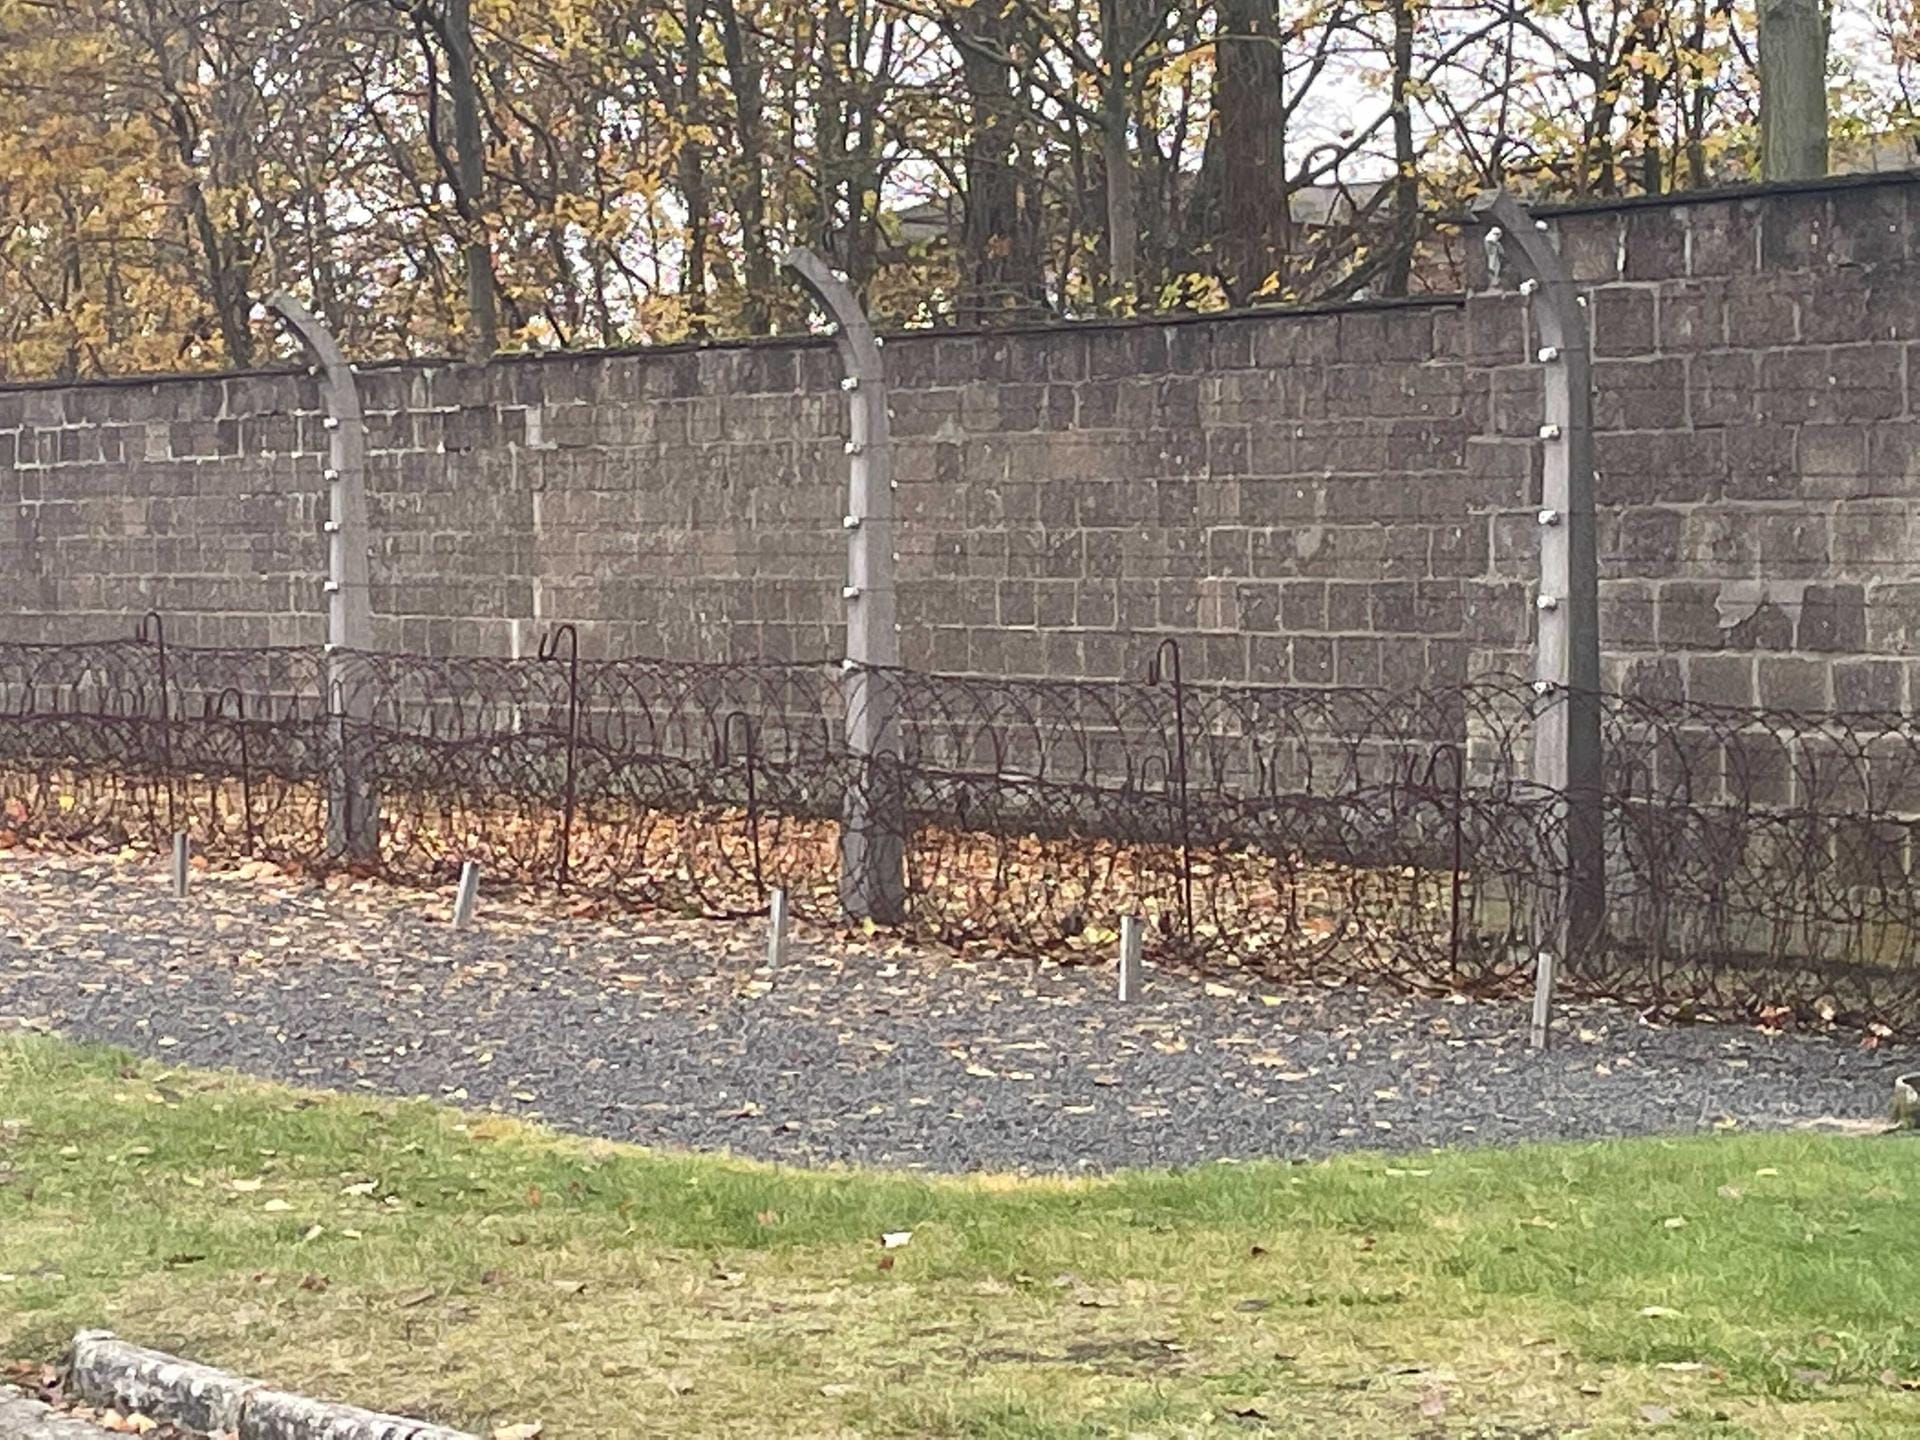 Elektrozaun im KZ Sachsenhausen: Der Überlebende Emil Farkas musste mit ansehen, wie sich Häftlinge absichtlich in den tödlichen Zaun warfen.